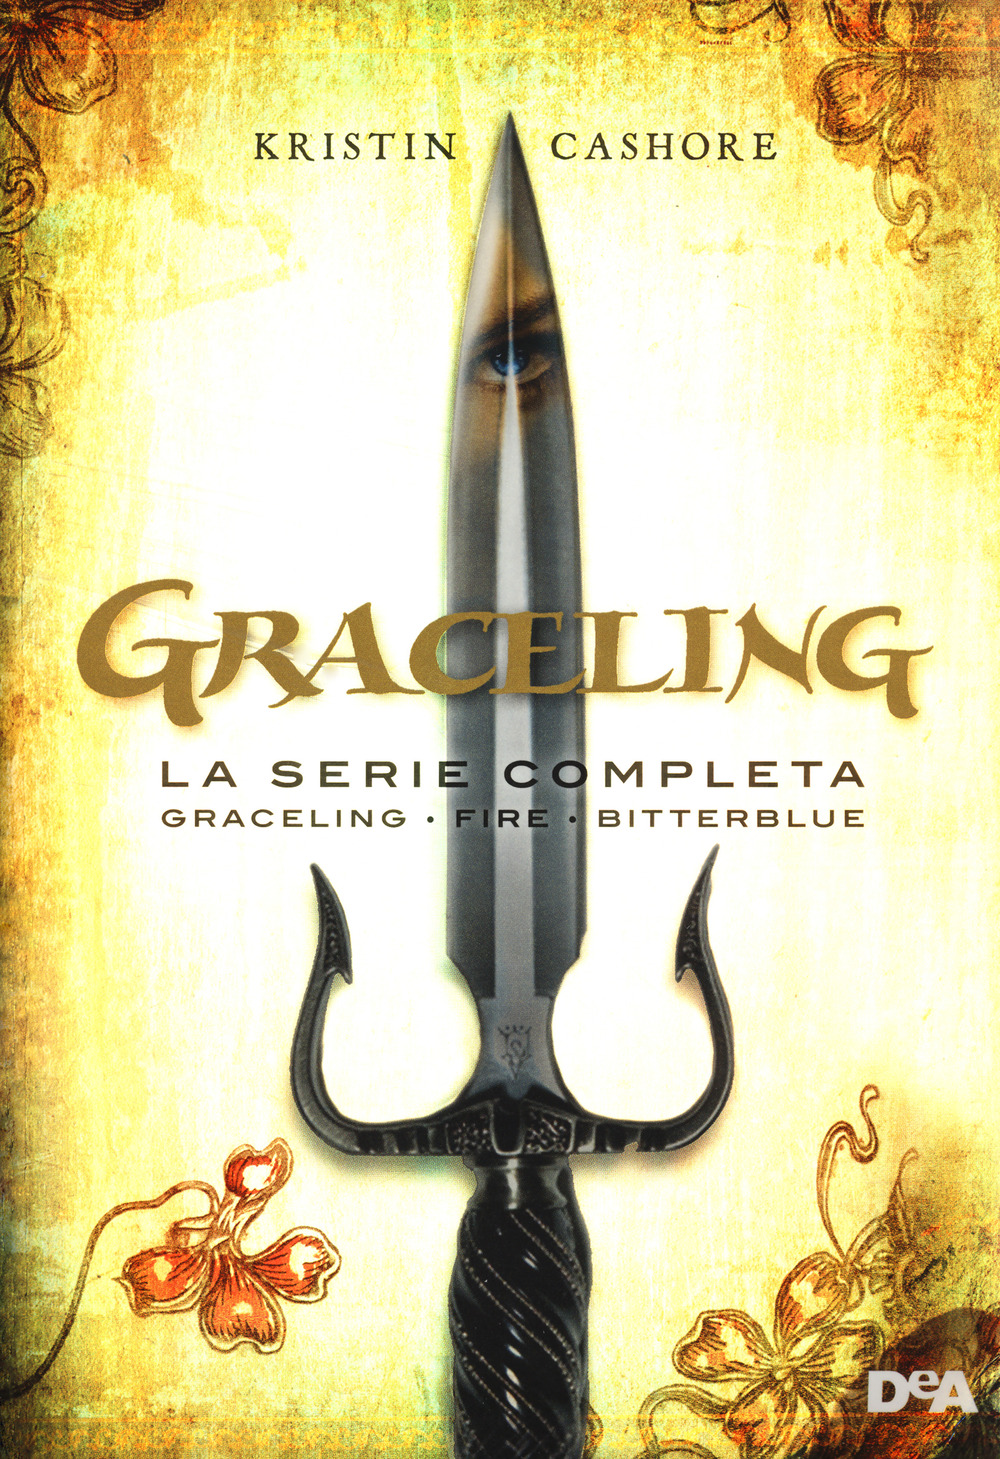 Graceling. La serie completa: Graceling-Fire-Bitterblue